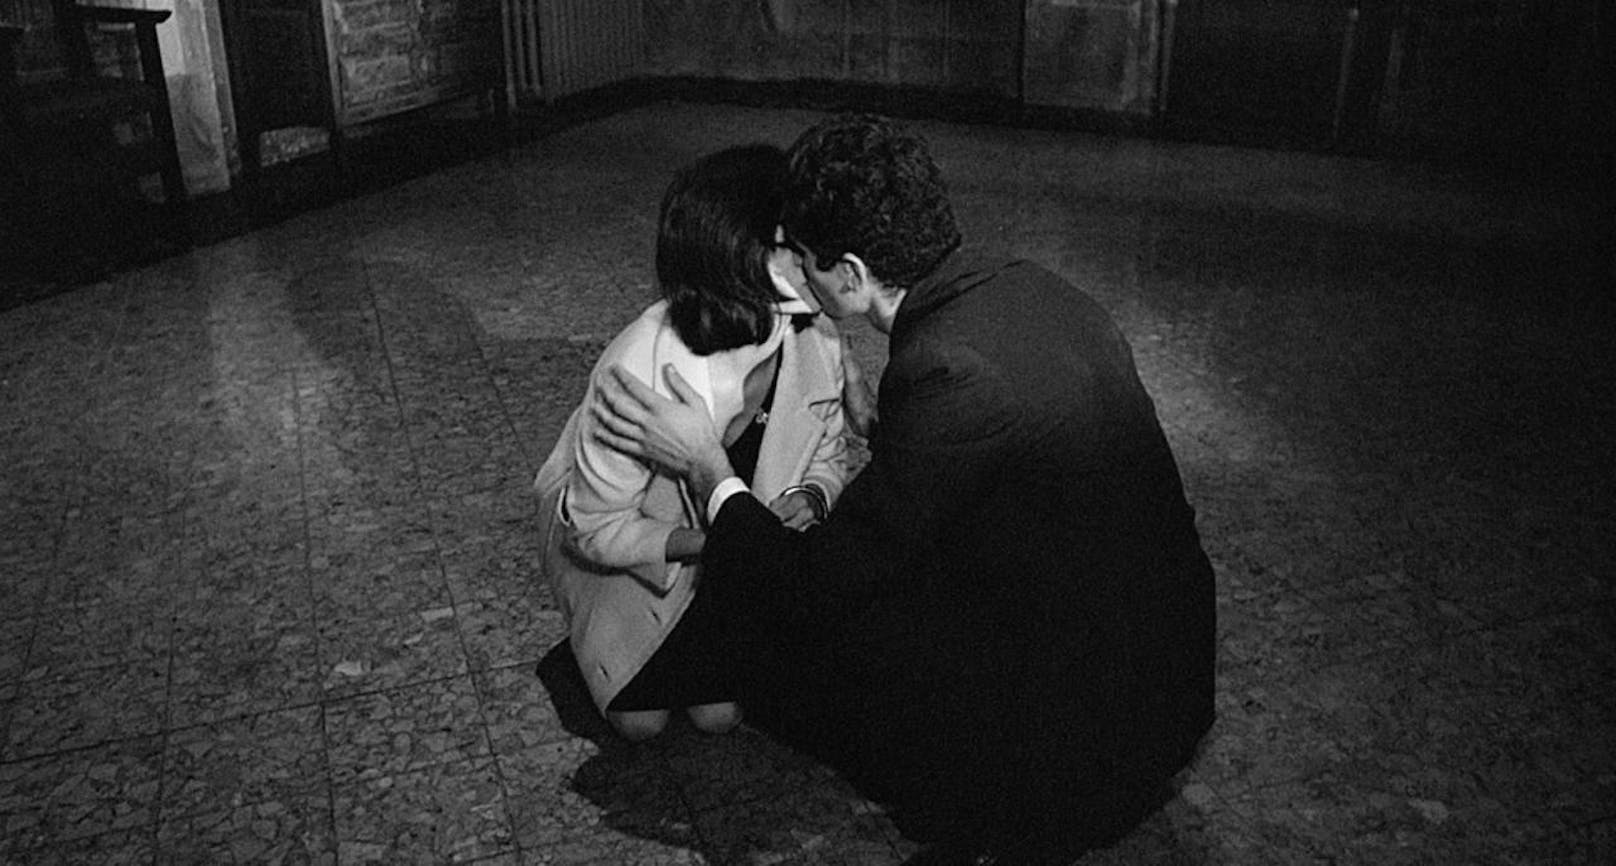 Auch für seinen Regie-Zweitling "Prima della rivoluzione - Vor der Revolution" (1964) schrieb der Italiener das Skript. In den Hauptrollen des Dramas um einen jungen Mann, der sich in seine Tante verliebt, waren Adriana Asti und Francesco Barilli zu sehen.